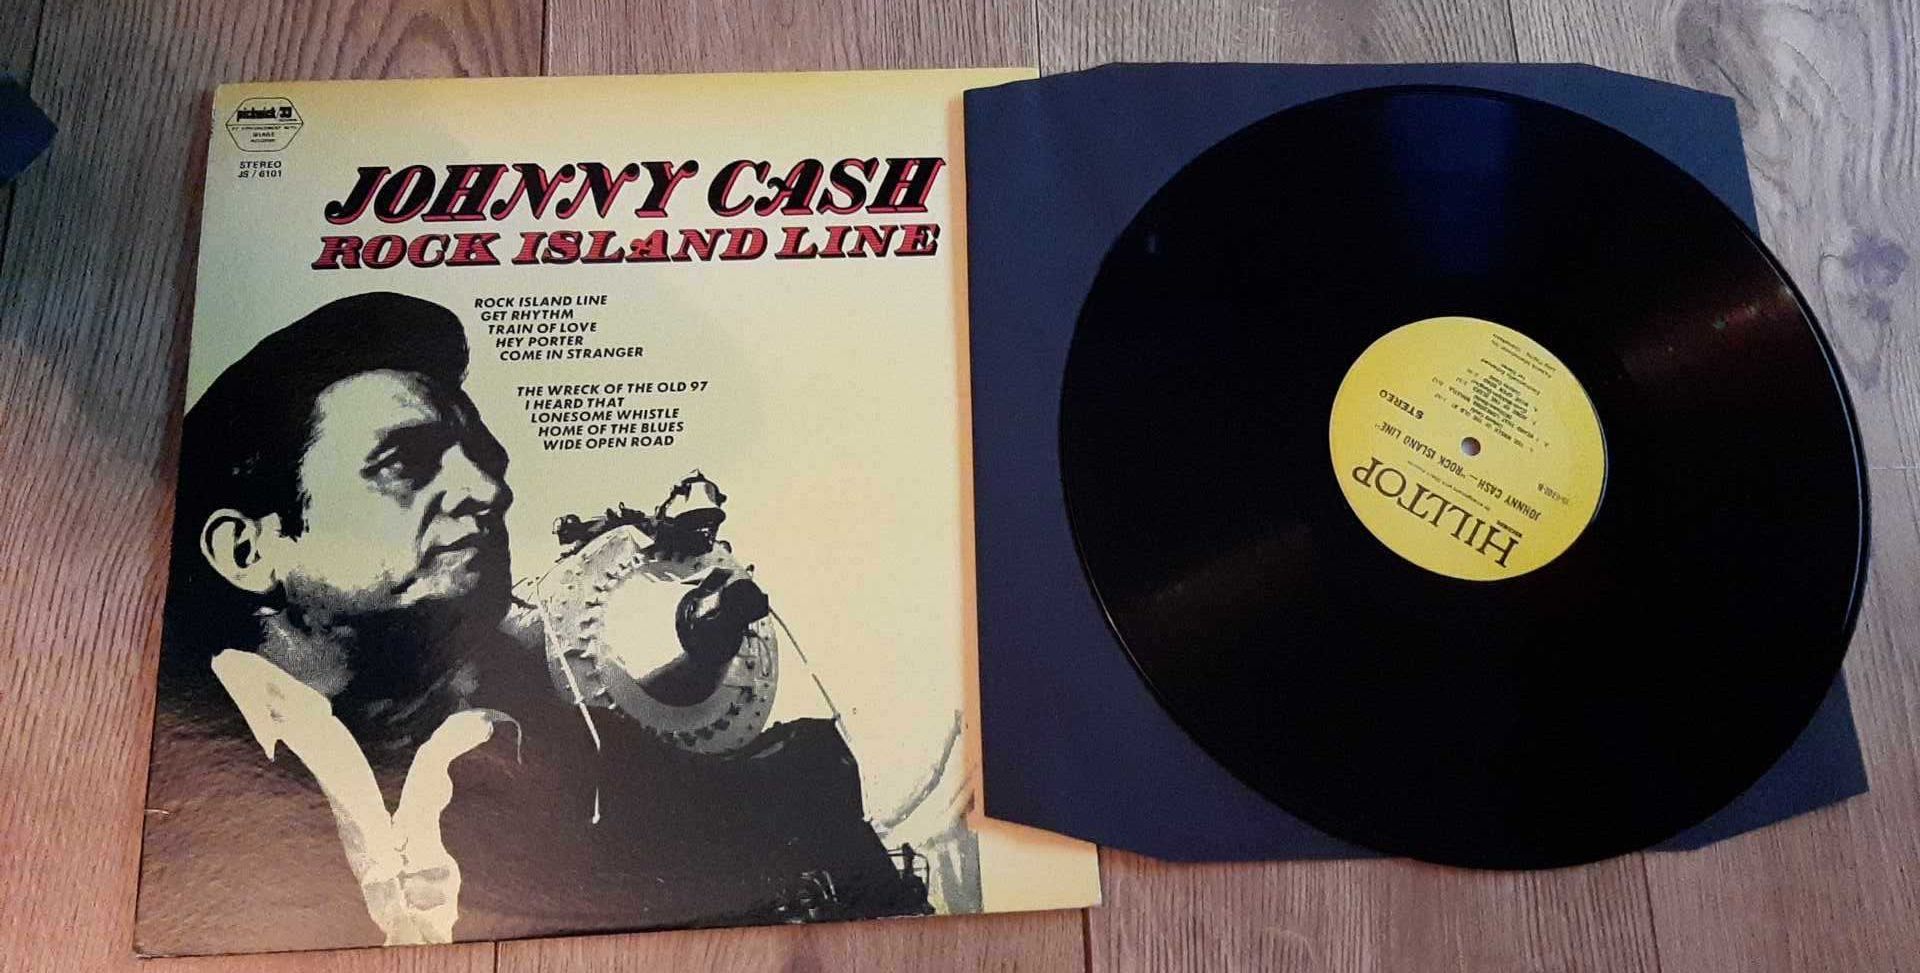 Johnny Cash “Rock Island Line” - płyta winylowa